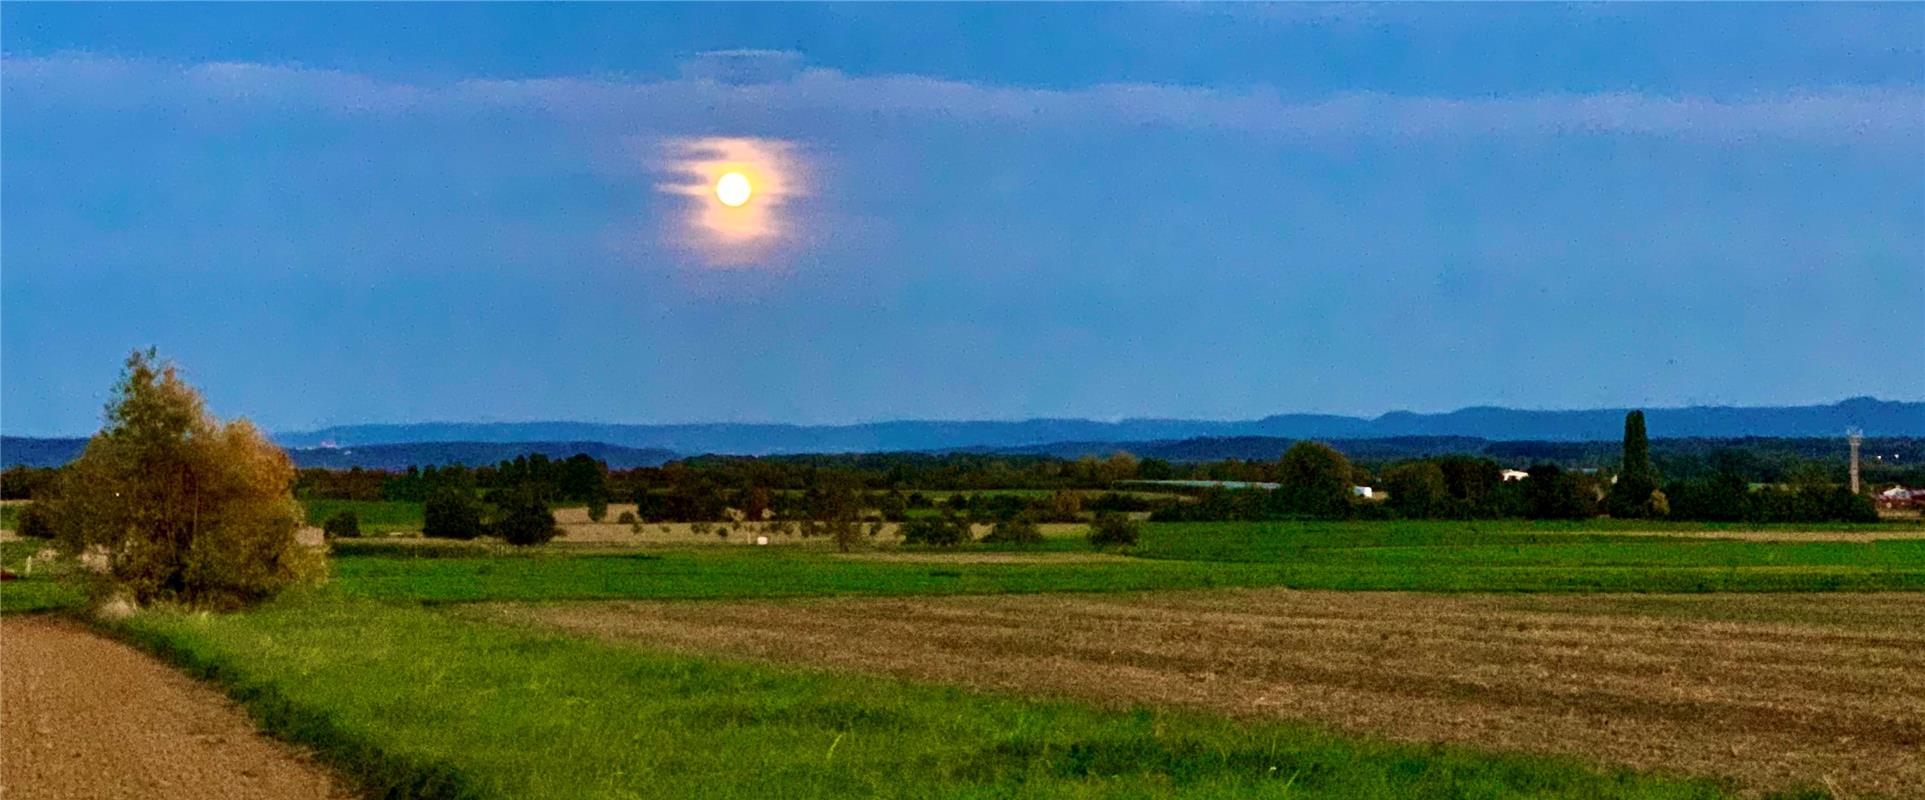 Mond mit rosa Halo über gäuschen Feldern. Von Minja Rollinson aus Gäufelden.